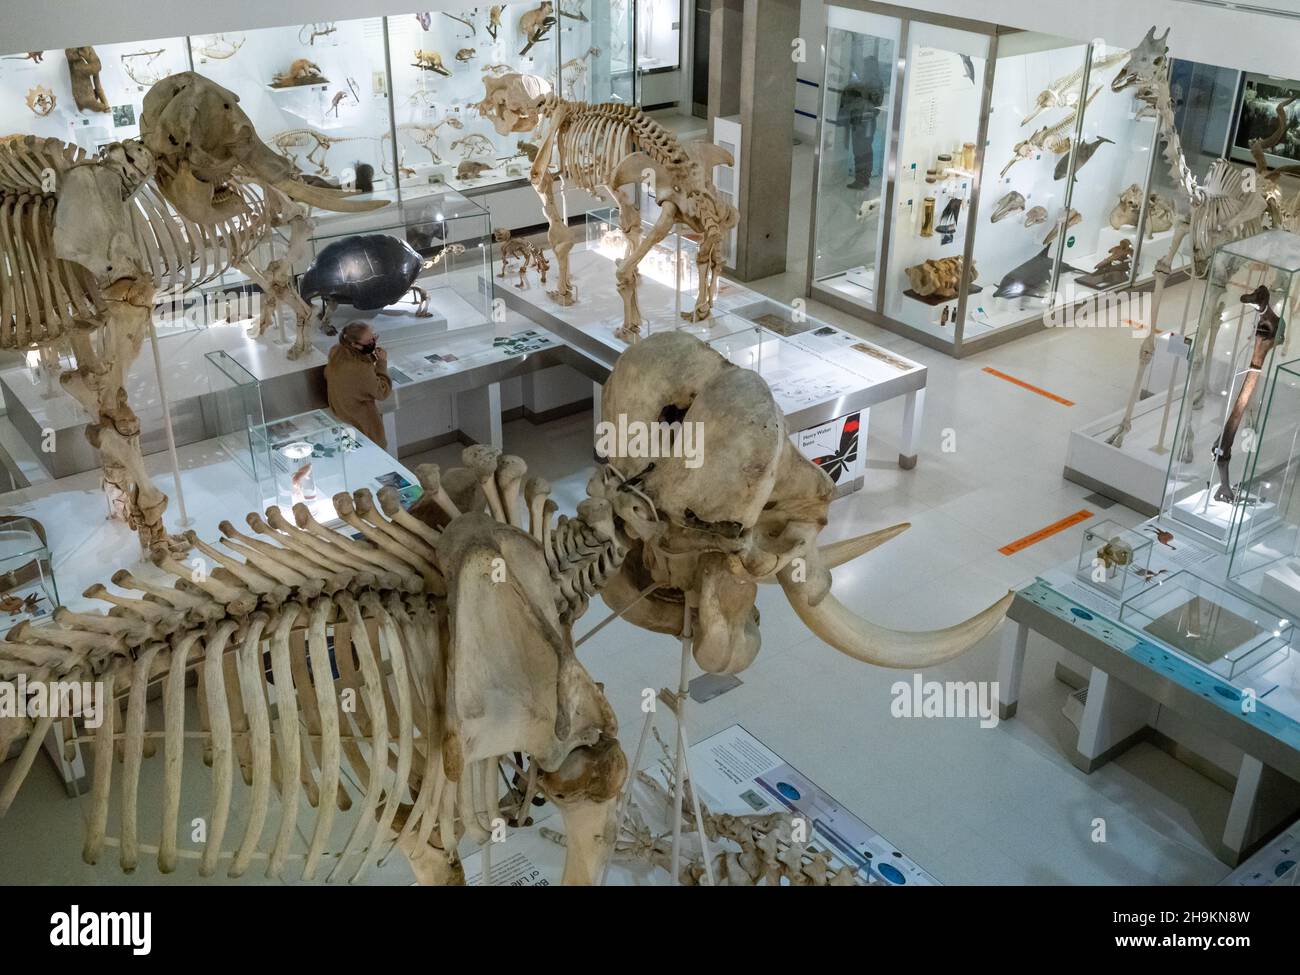 Esqueletos de animales y otras exposiciones en la planta baja inferior del Museo de Zoología en Cambridge, Reino Unido. Foto de stock